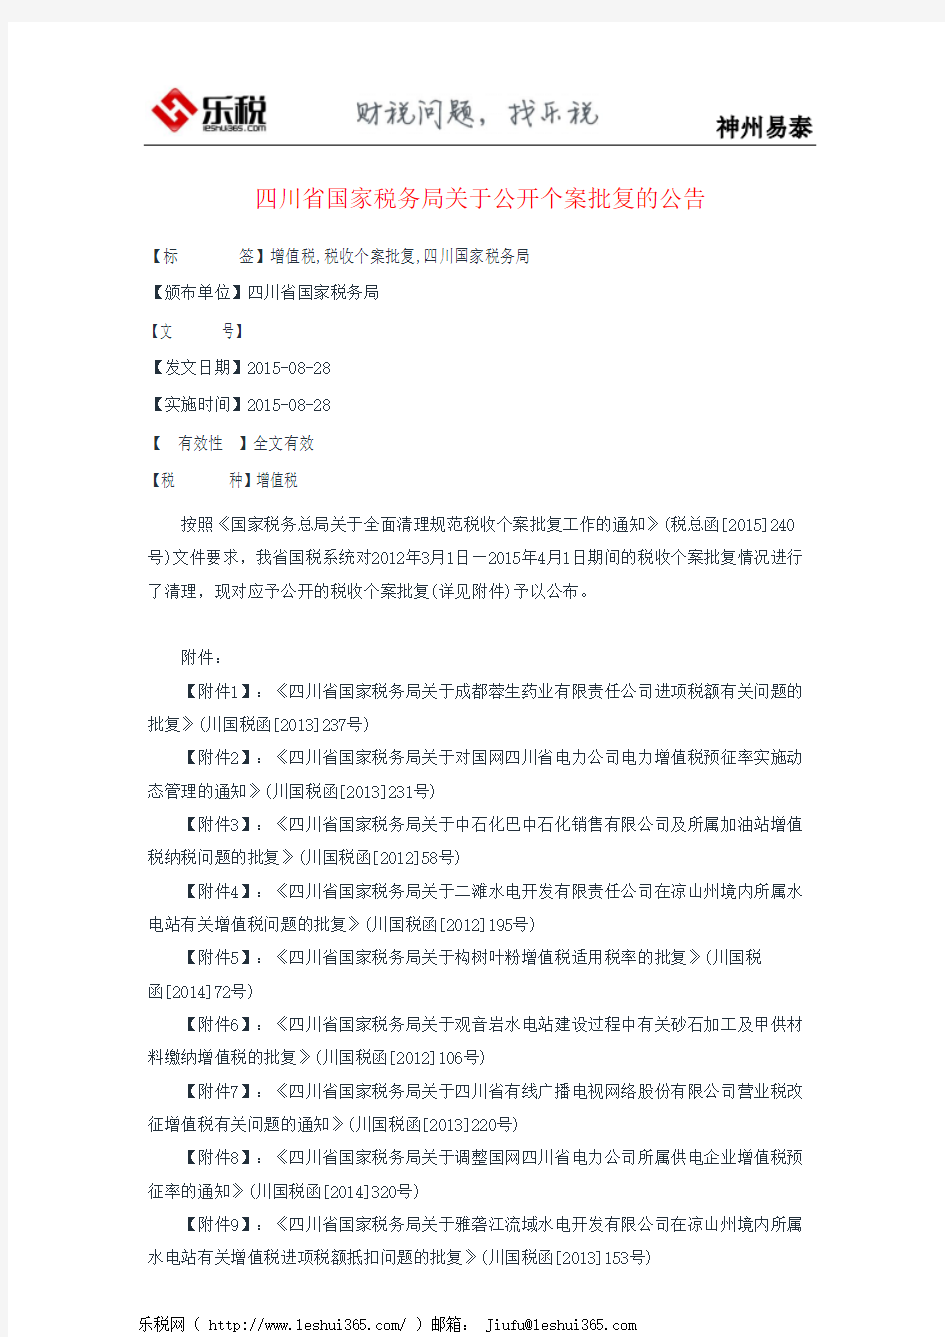 四川省国家税务局关于公开个案批复的公告